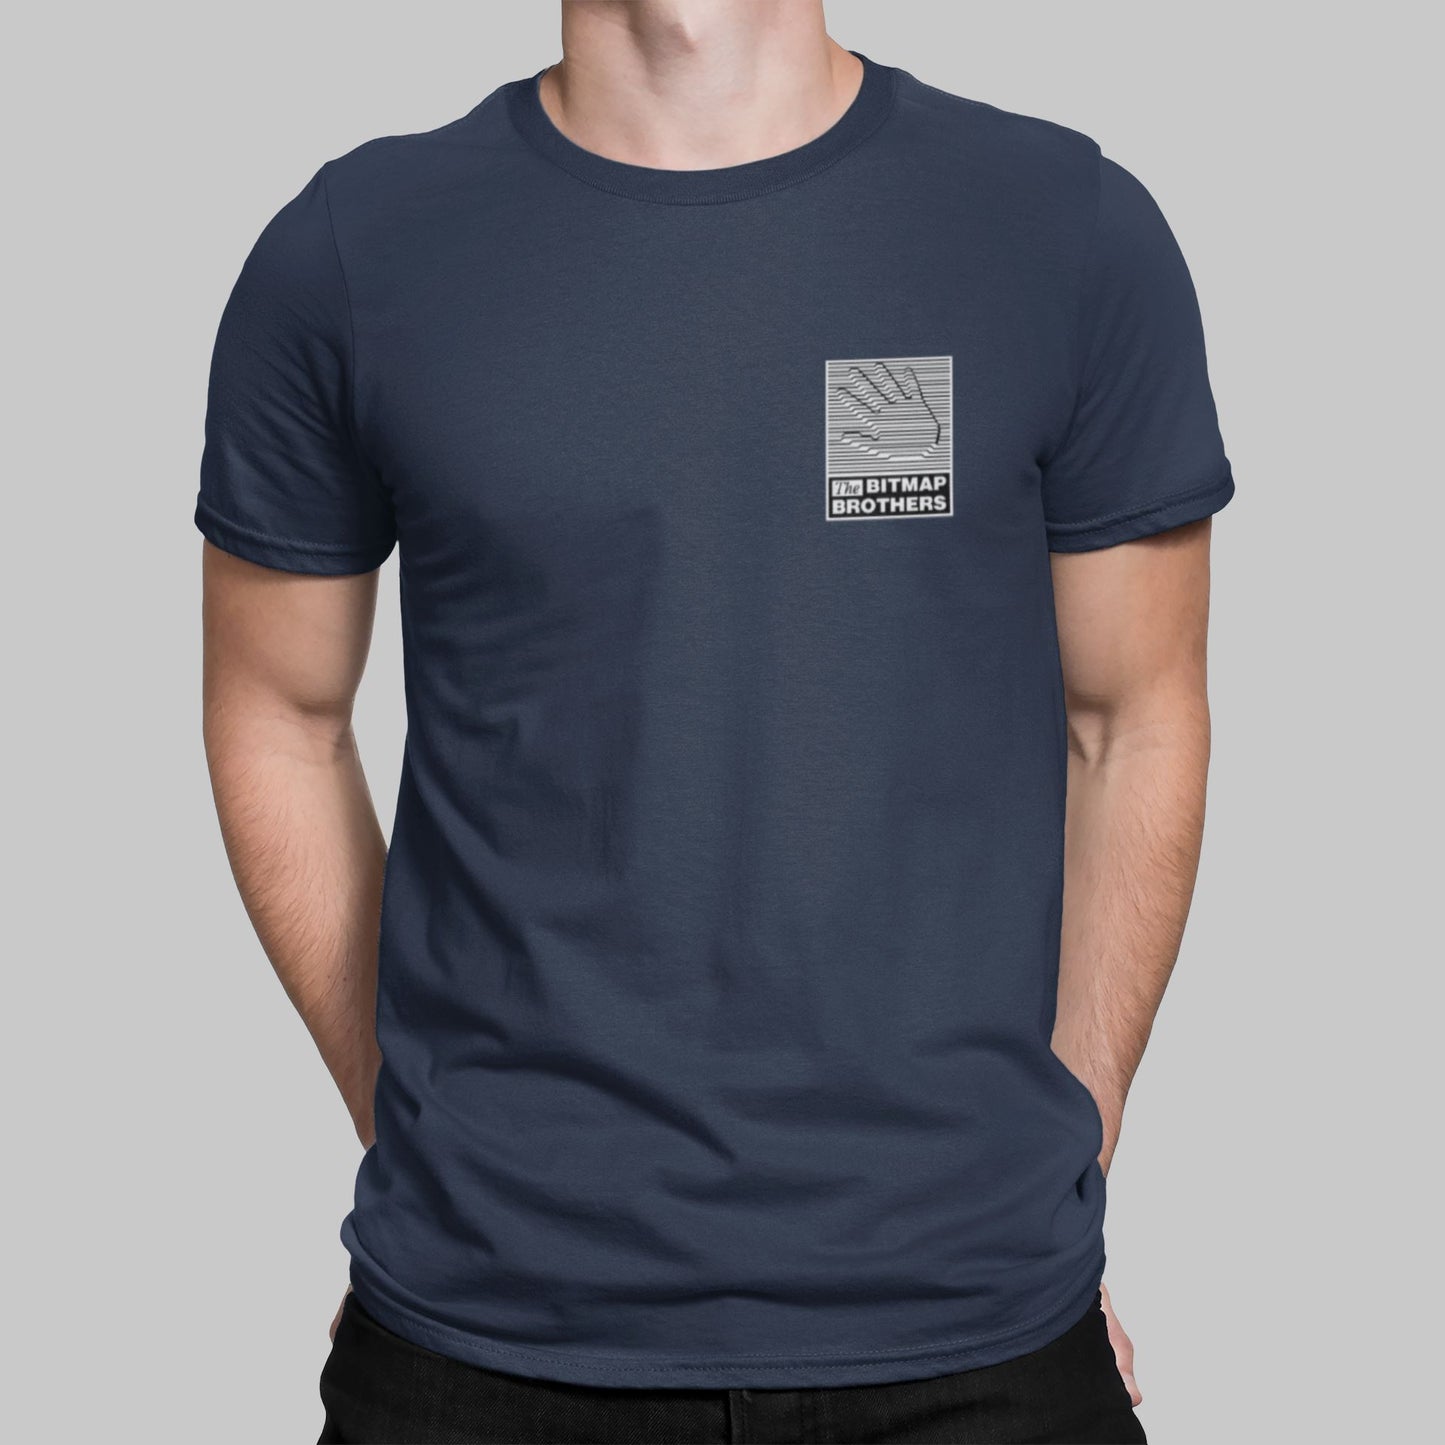 Bitmap Brothers Pocket Print Retro Gaming T-Shirt T-Shirt Seven Squared Small 34-36" Navy 